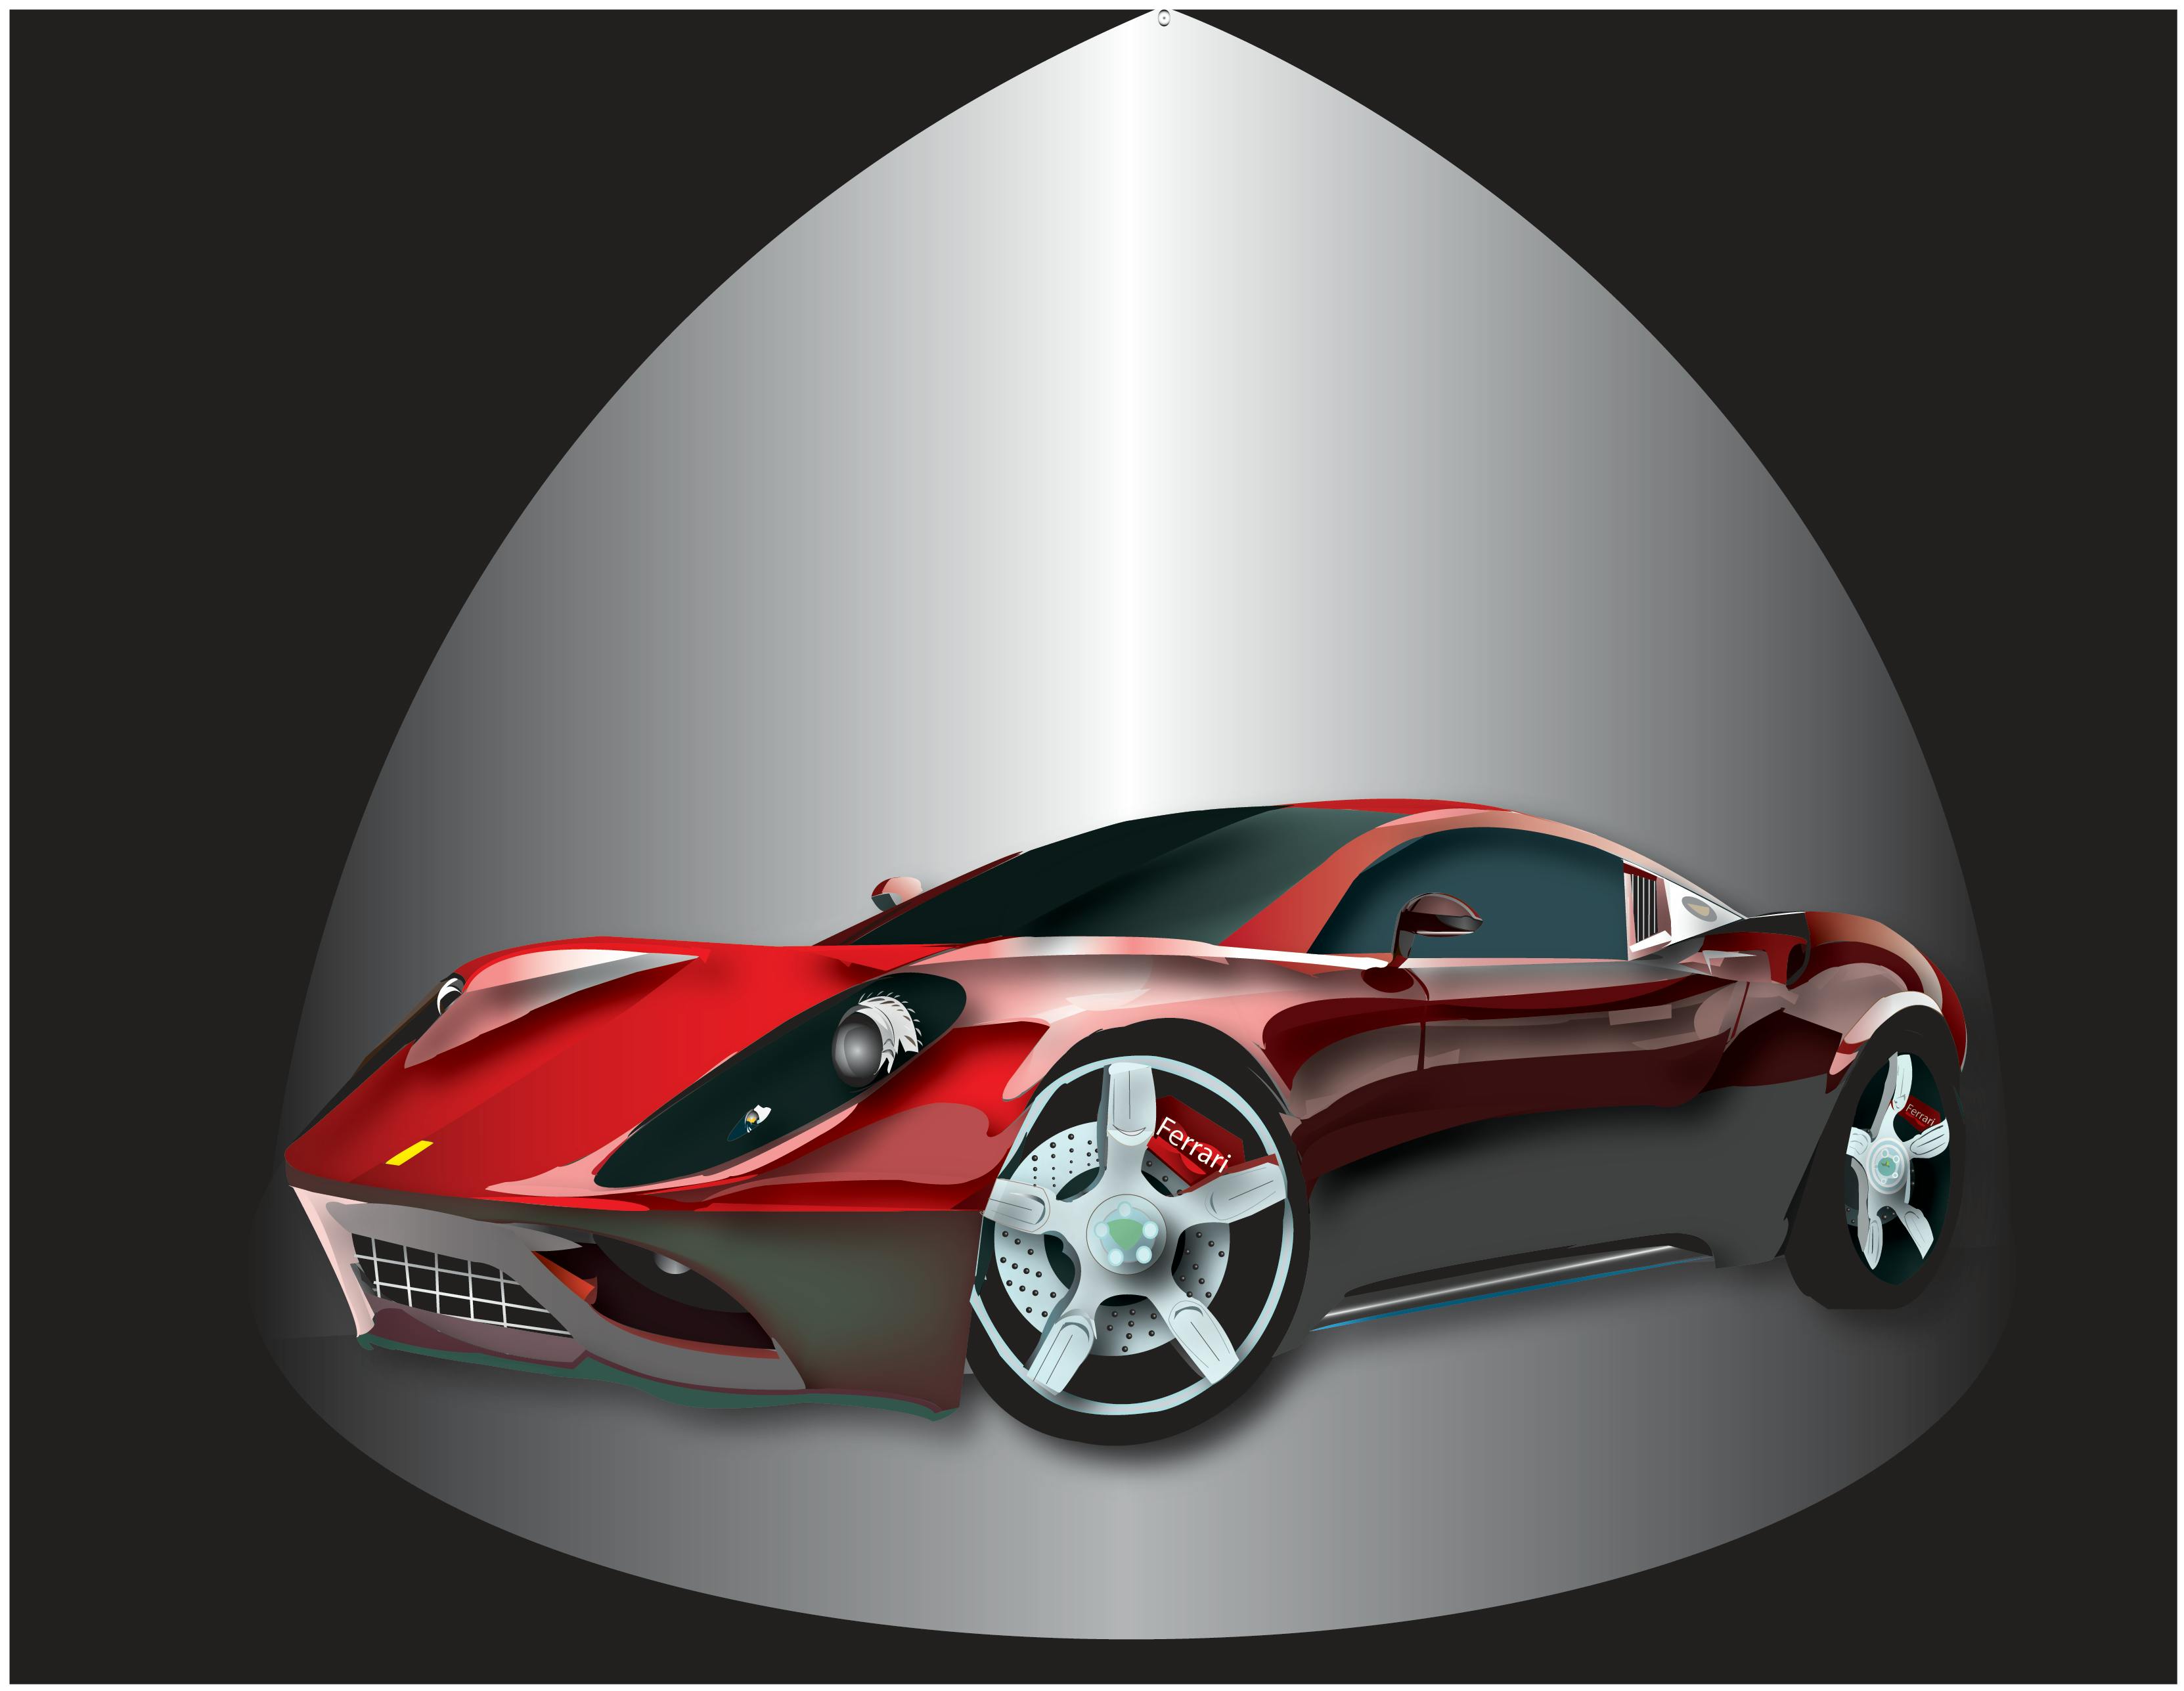 Free stock photo of car, creative art, Ferrari